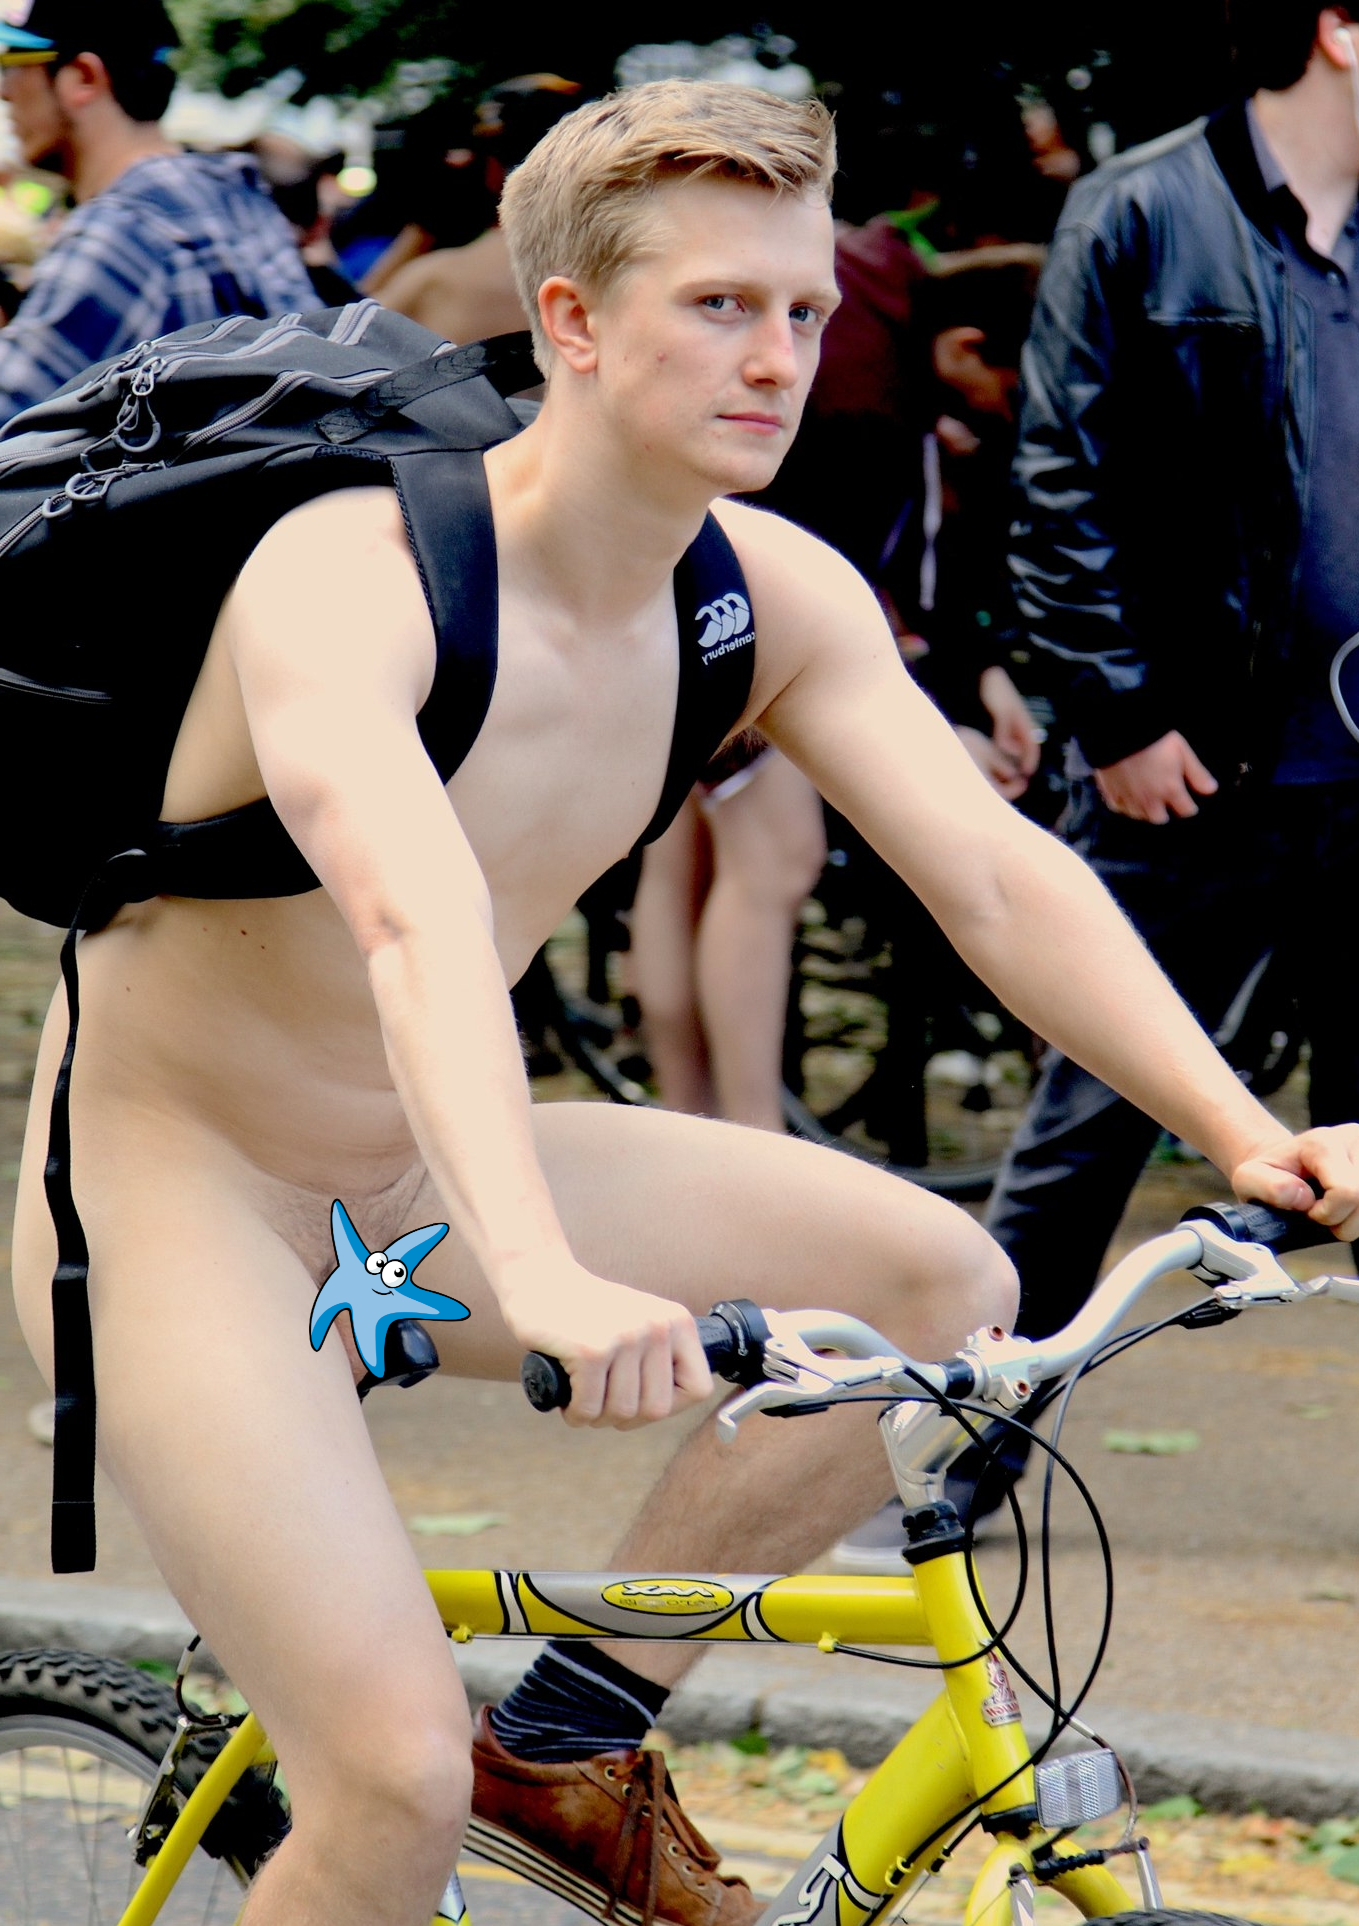 Blonde nude bike rider